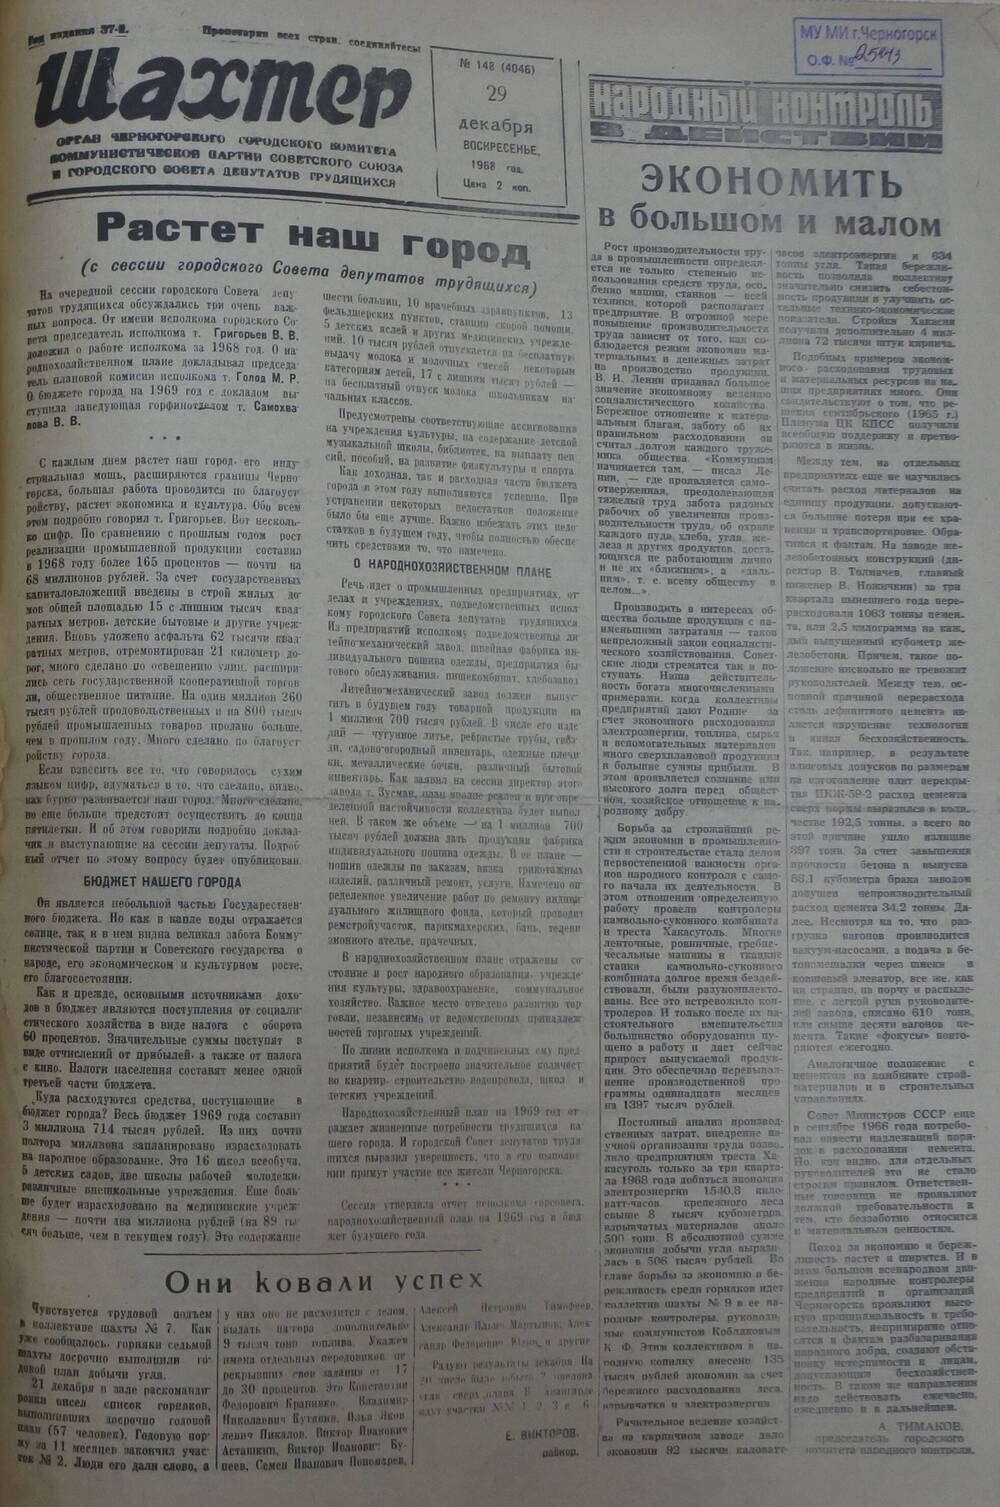 Газета «Шахтер». Выпуск № 149 от 29.12.1968 г.